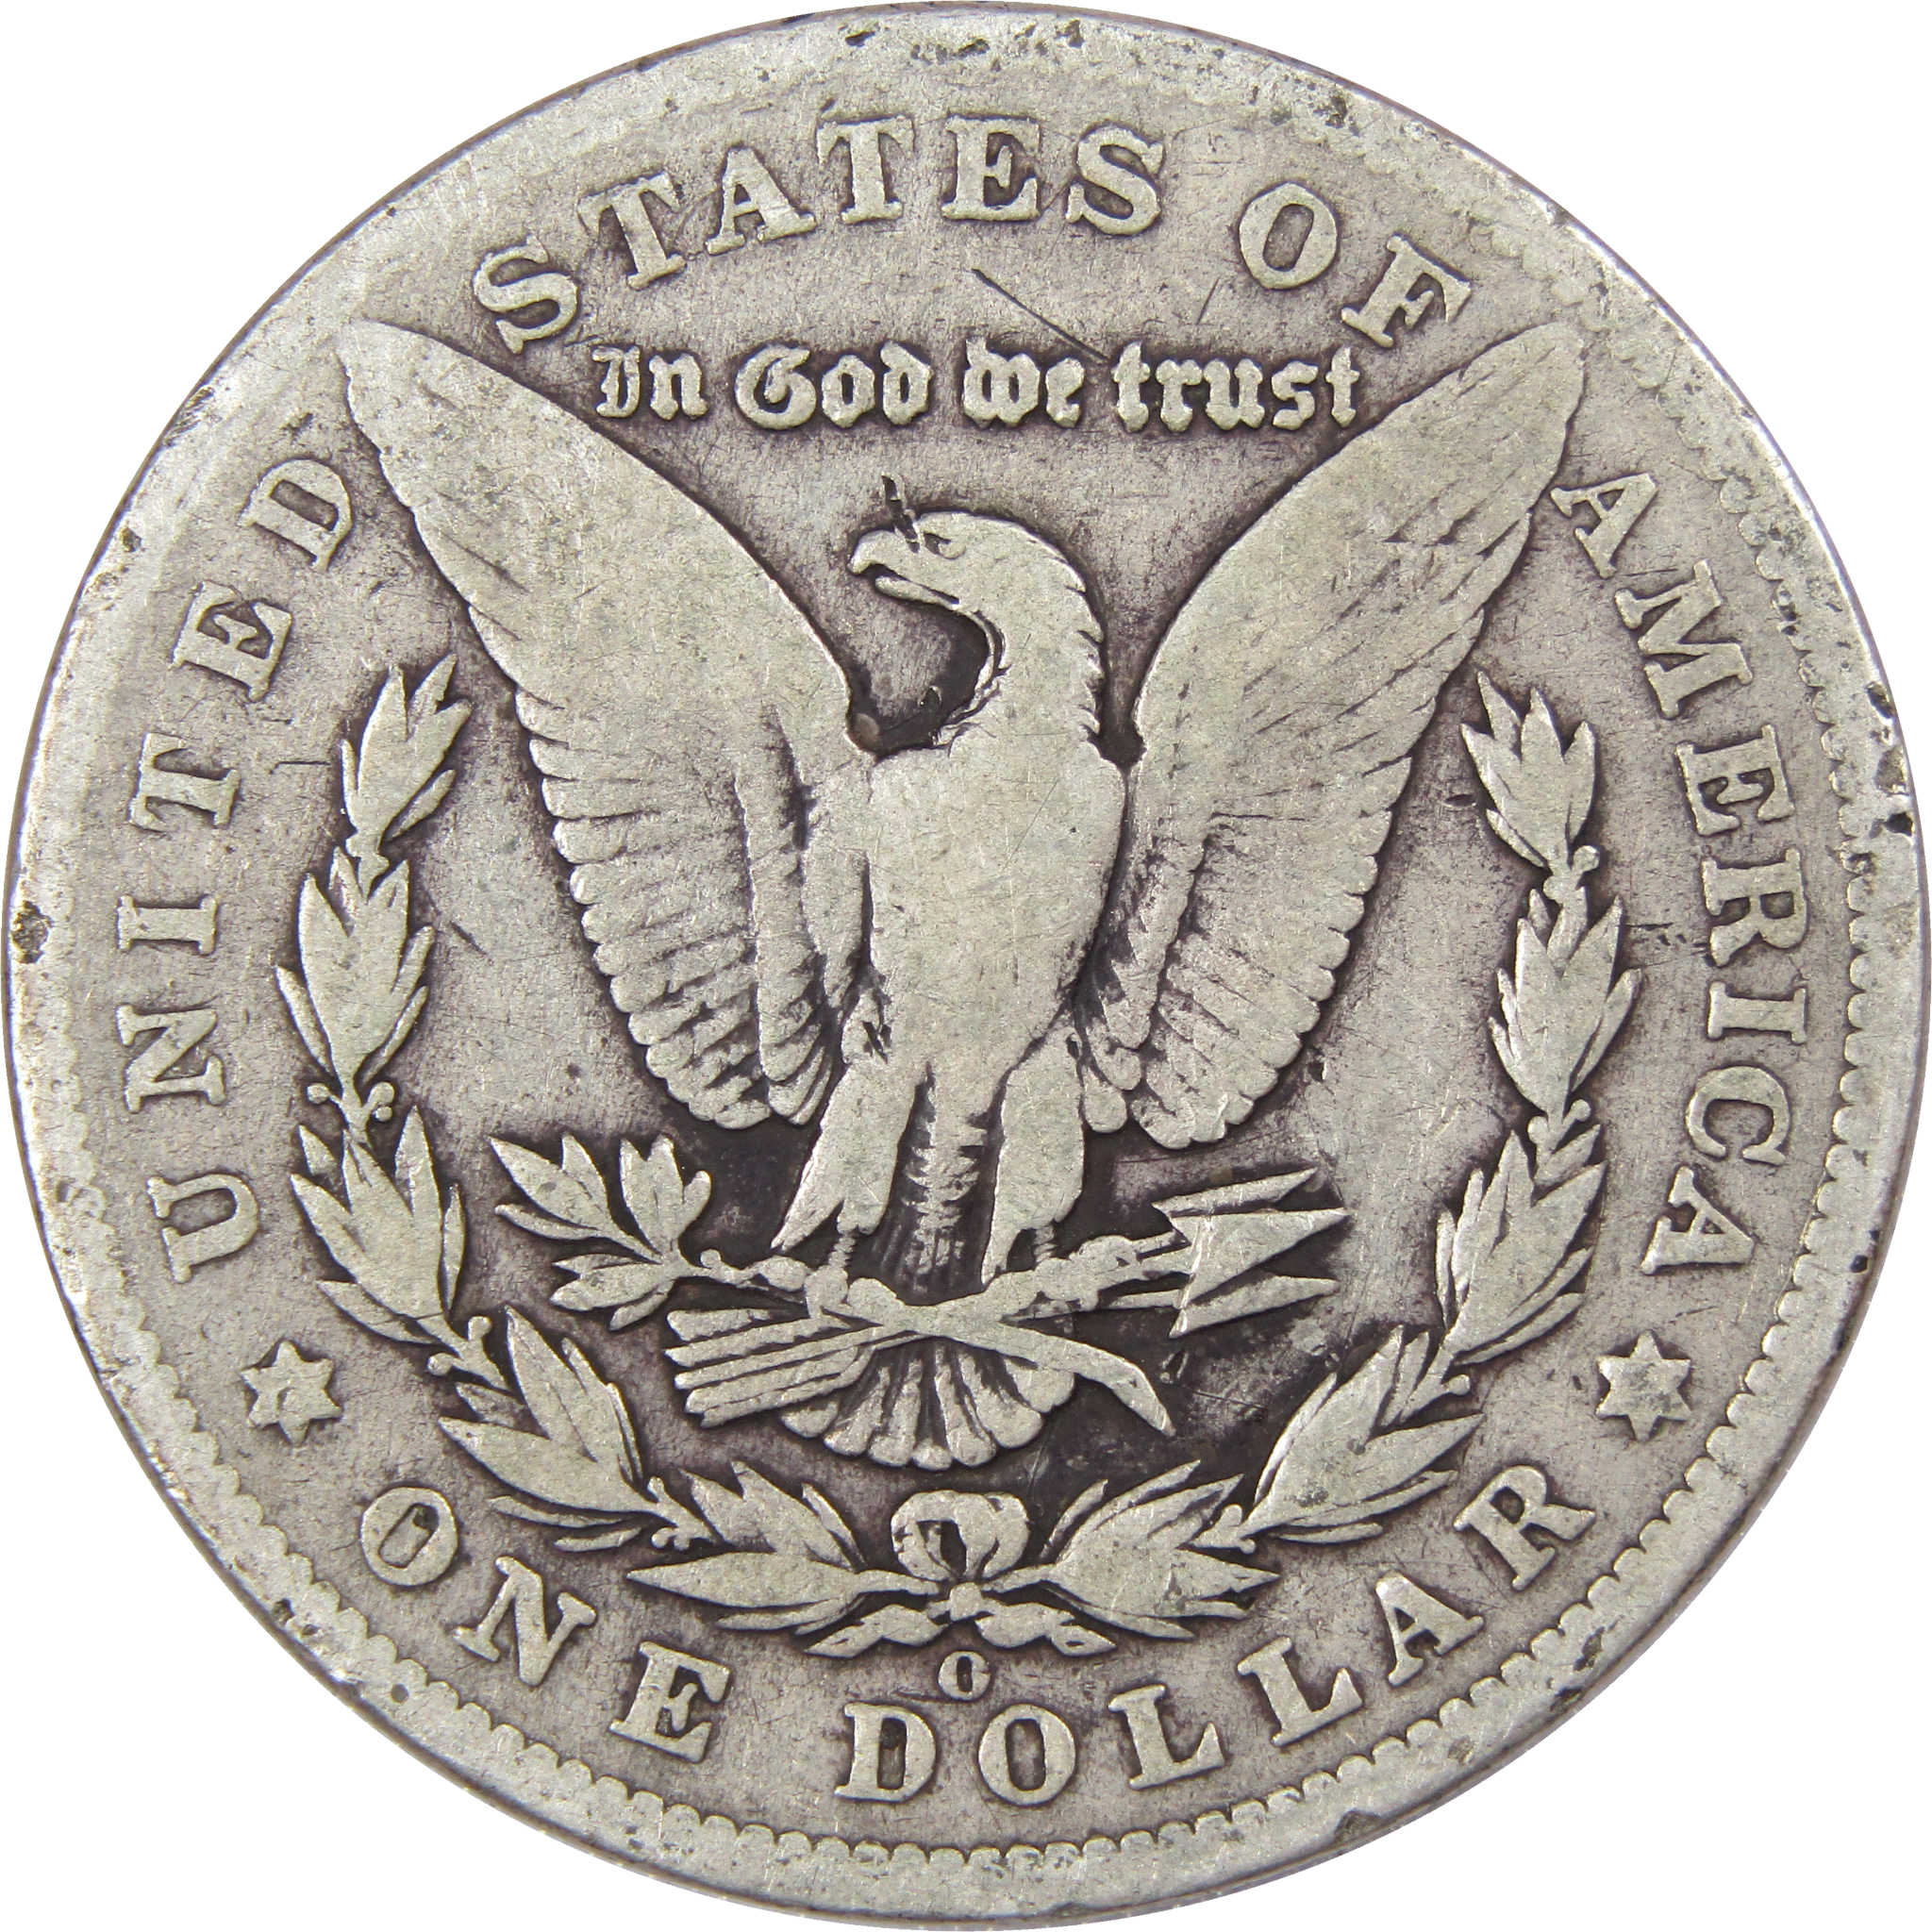 1902 O Morgan Dollar VG Very Good 90% Silver US Coin SKU:I1844 - Morgan coin - Morgan silver dollar - Morgan silver dollar for sale - Profile Coins &amp; Collectibles